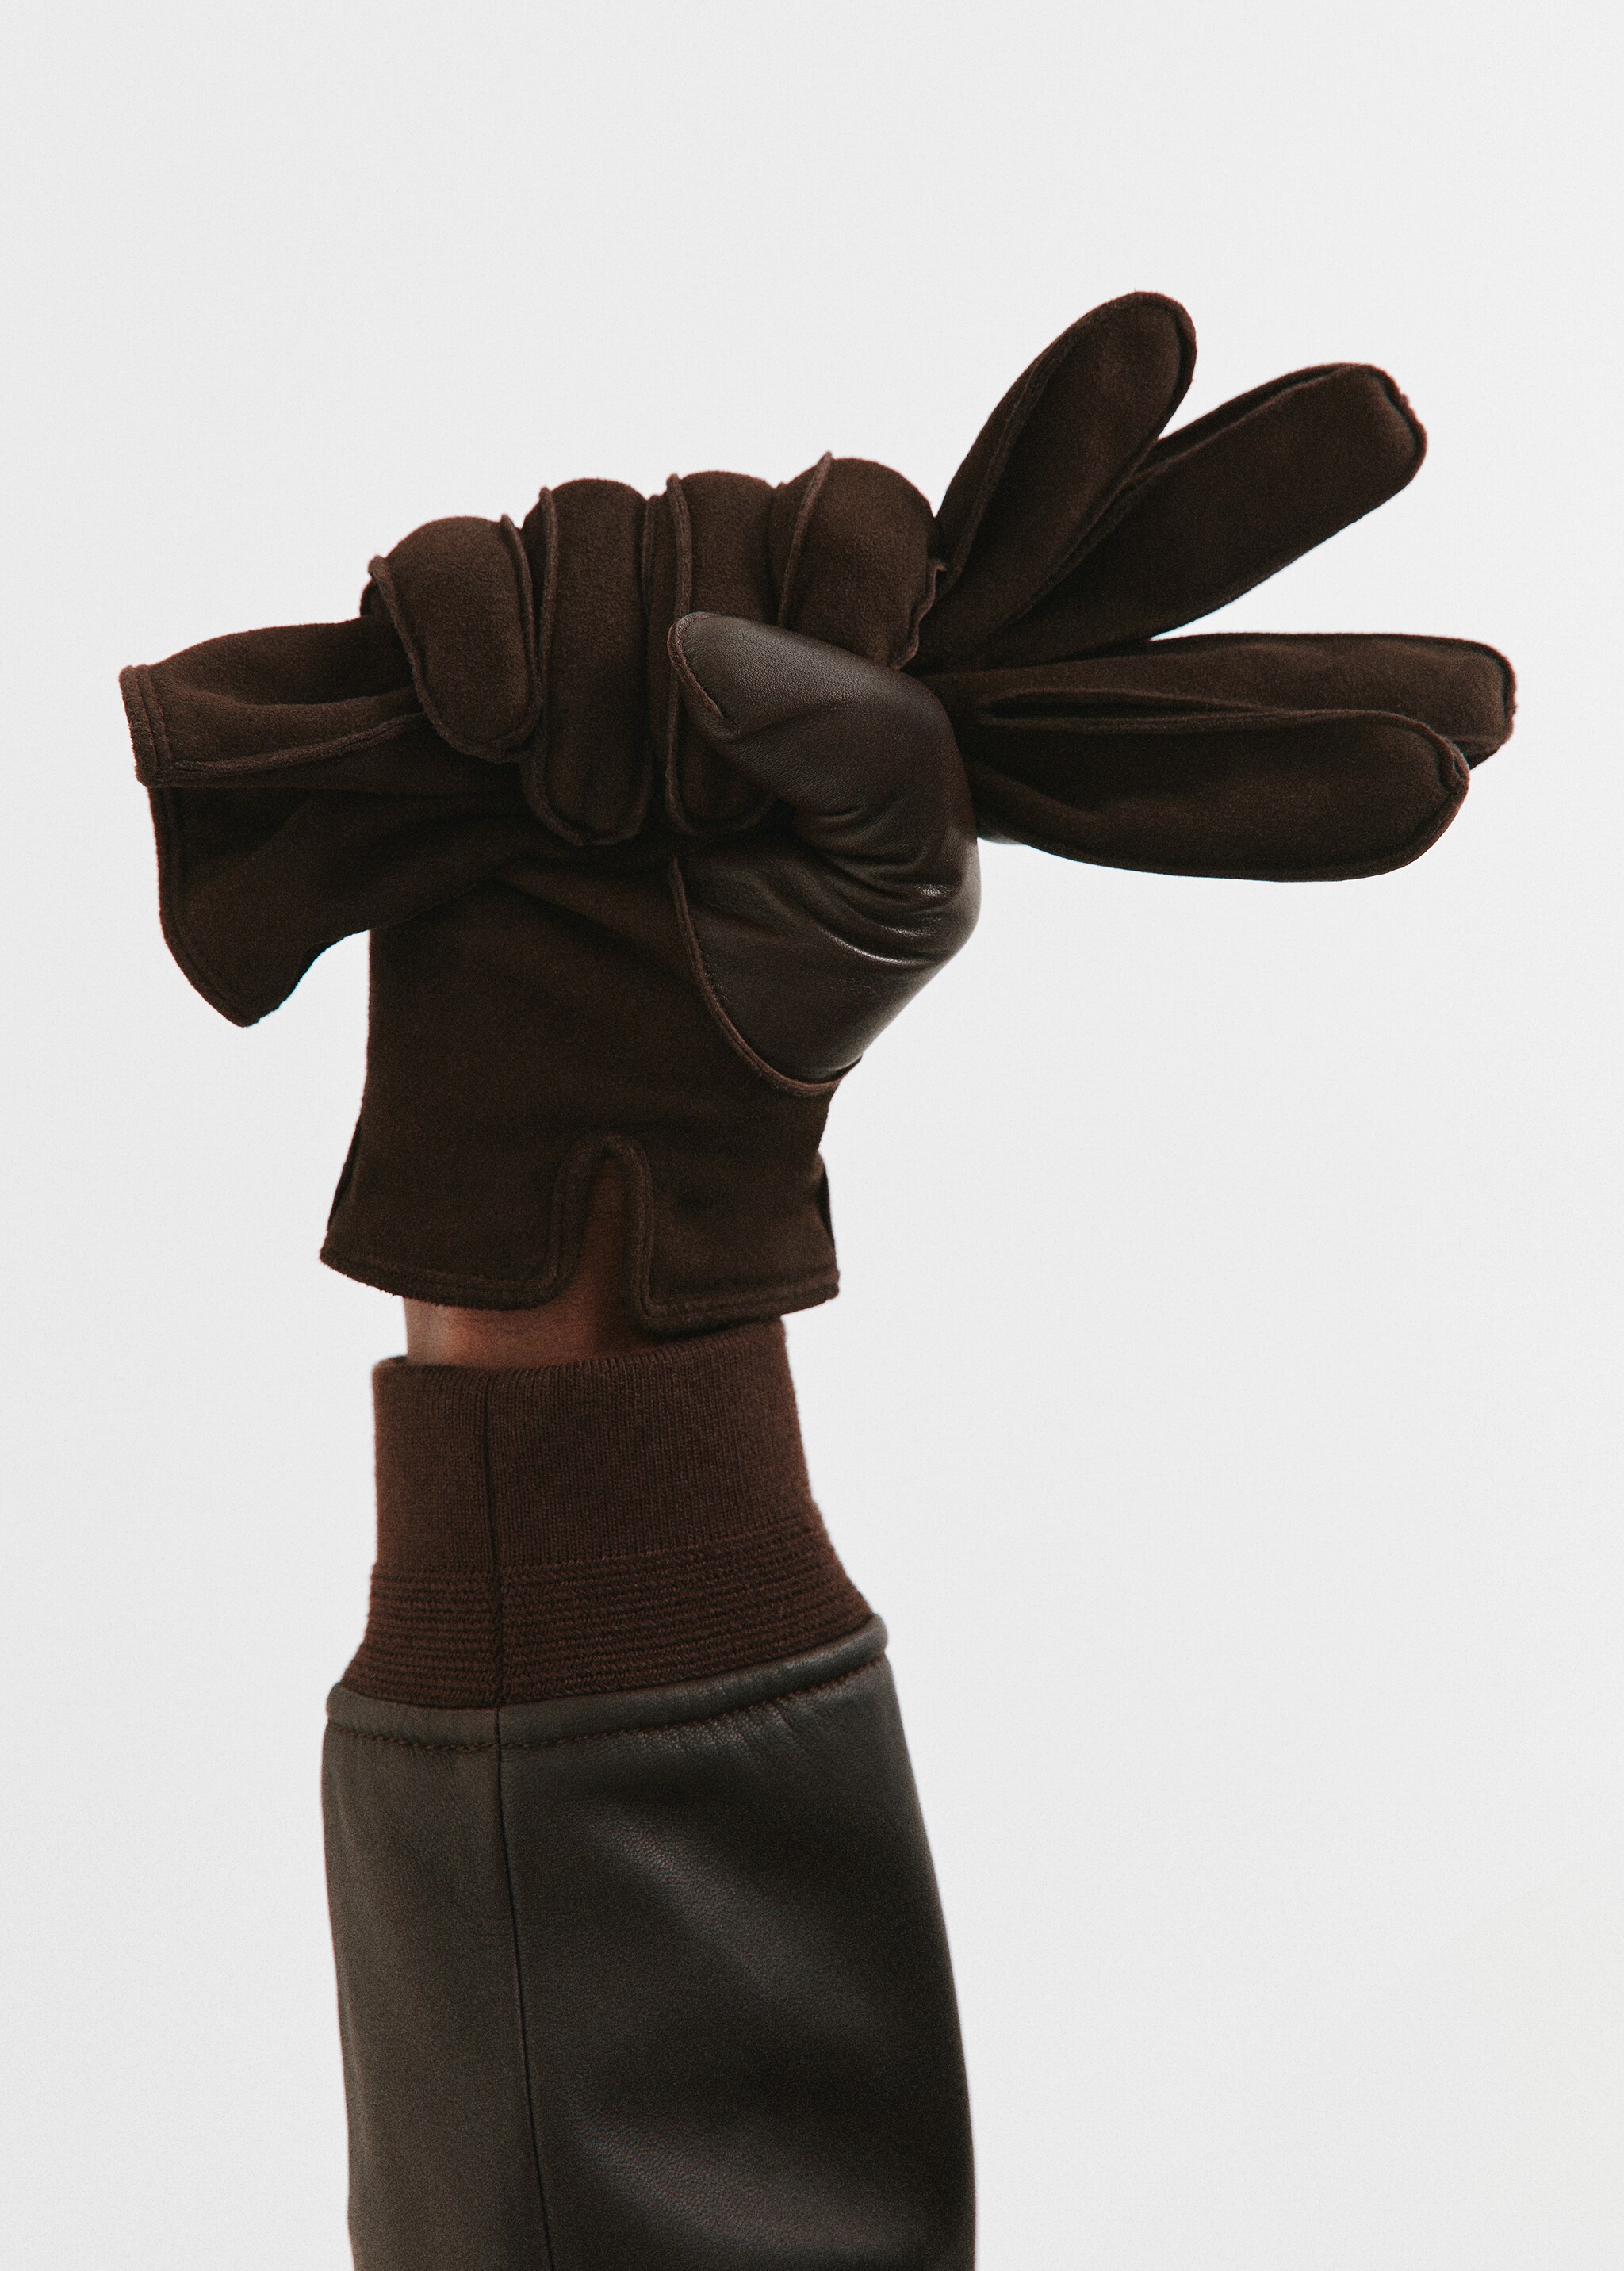 Rauleder-Handschuhe mit Woll-Innenseite - Detail des Artikels 9